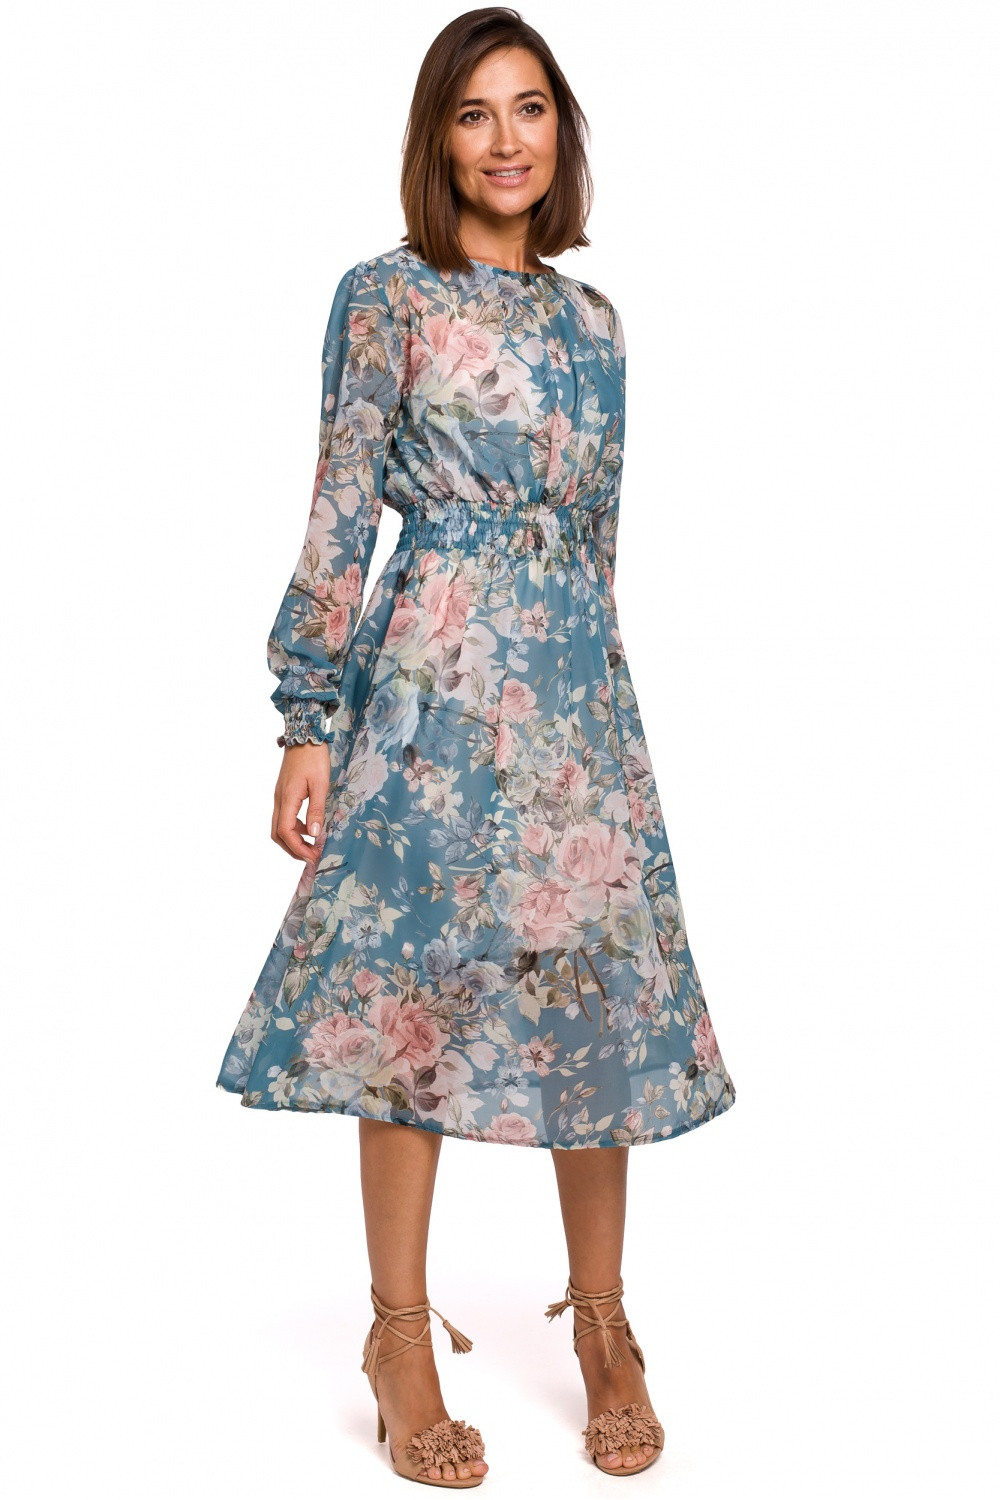 Dámské šaty S213 - Stylove modrá - květy M-38